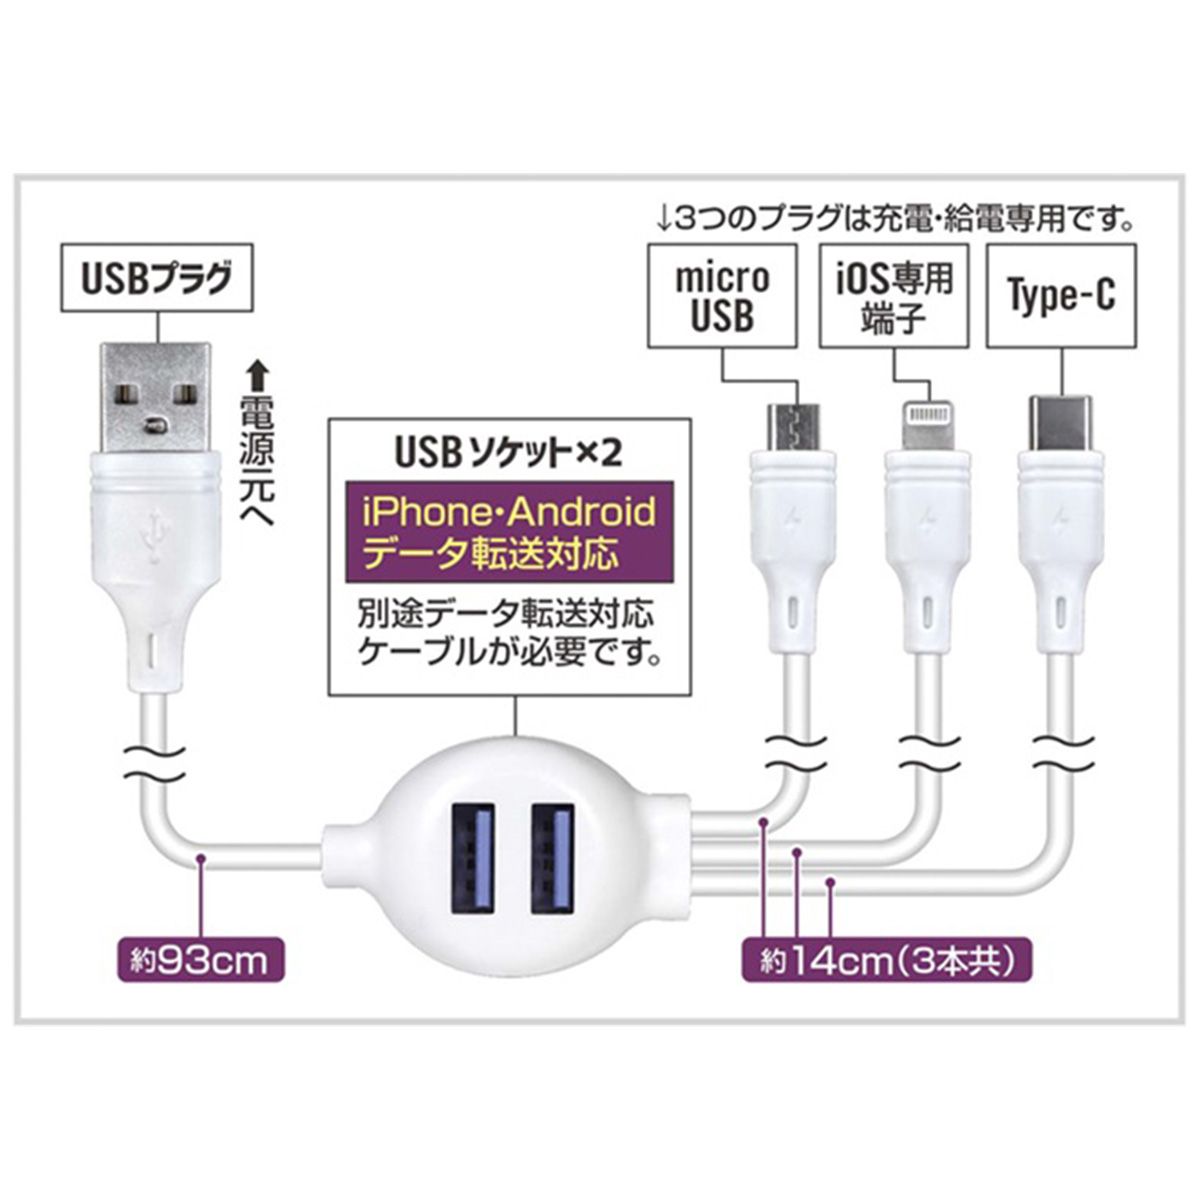 USBケーブル 充電ケーブル データ転送ケーブル 5in1マルチケーブル 362258